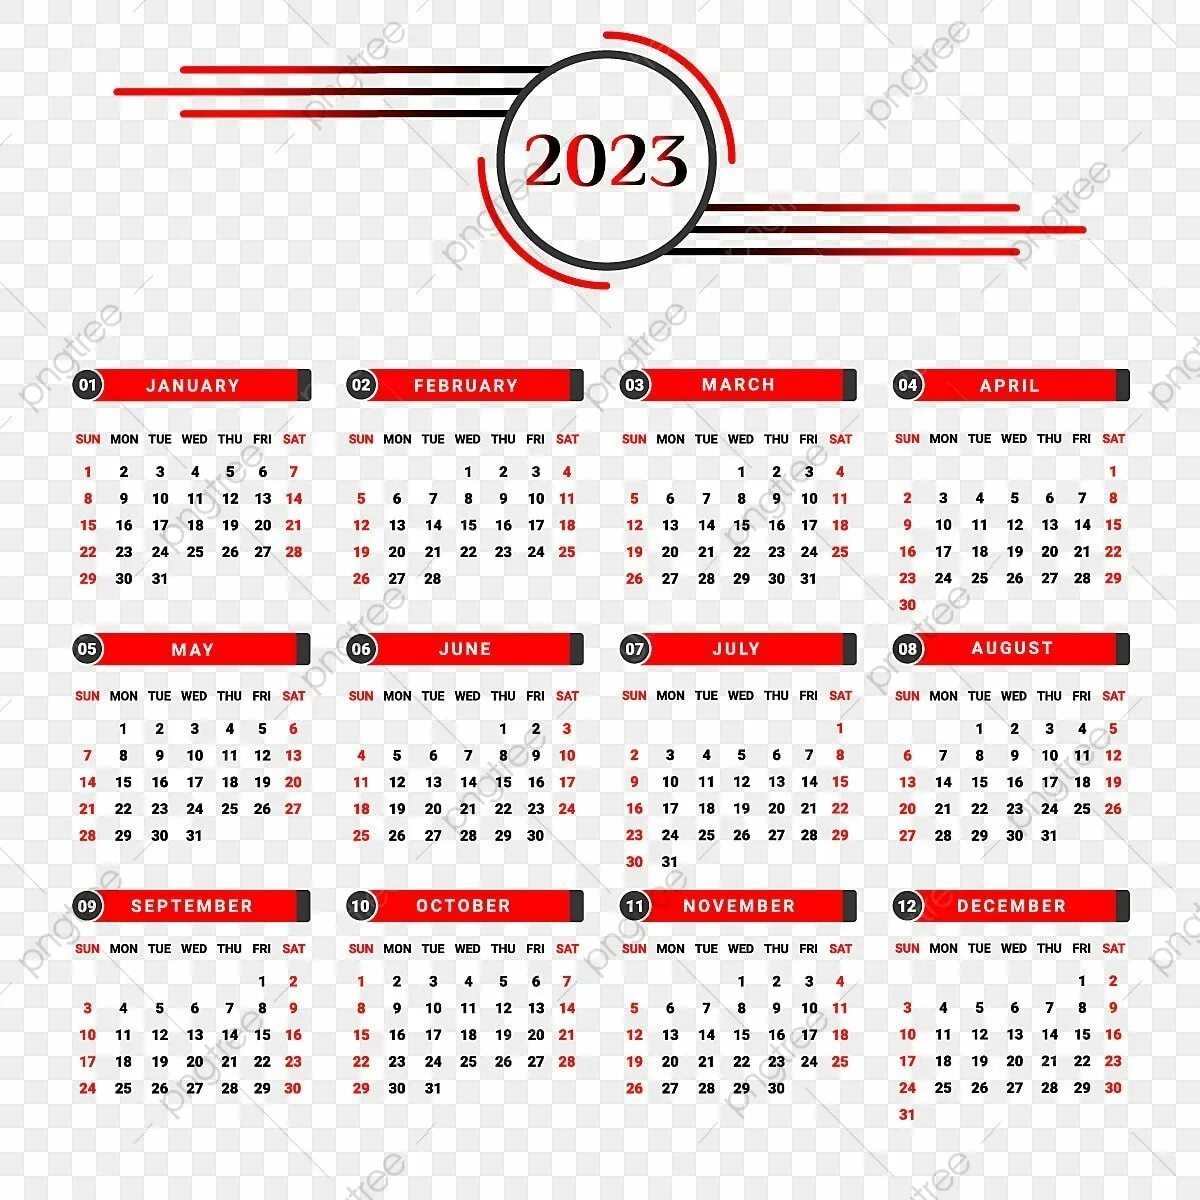 Календарь 2023. Календарь 2023 картинки. Календарь на 2023 год. 2023 Вектор.